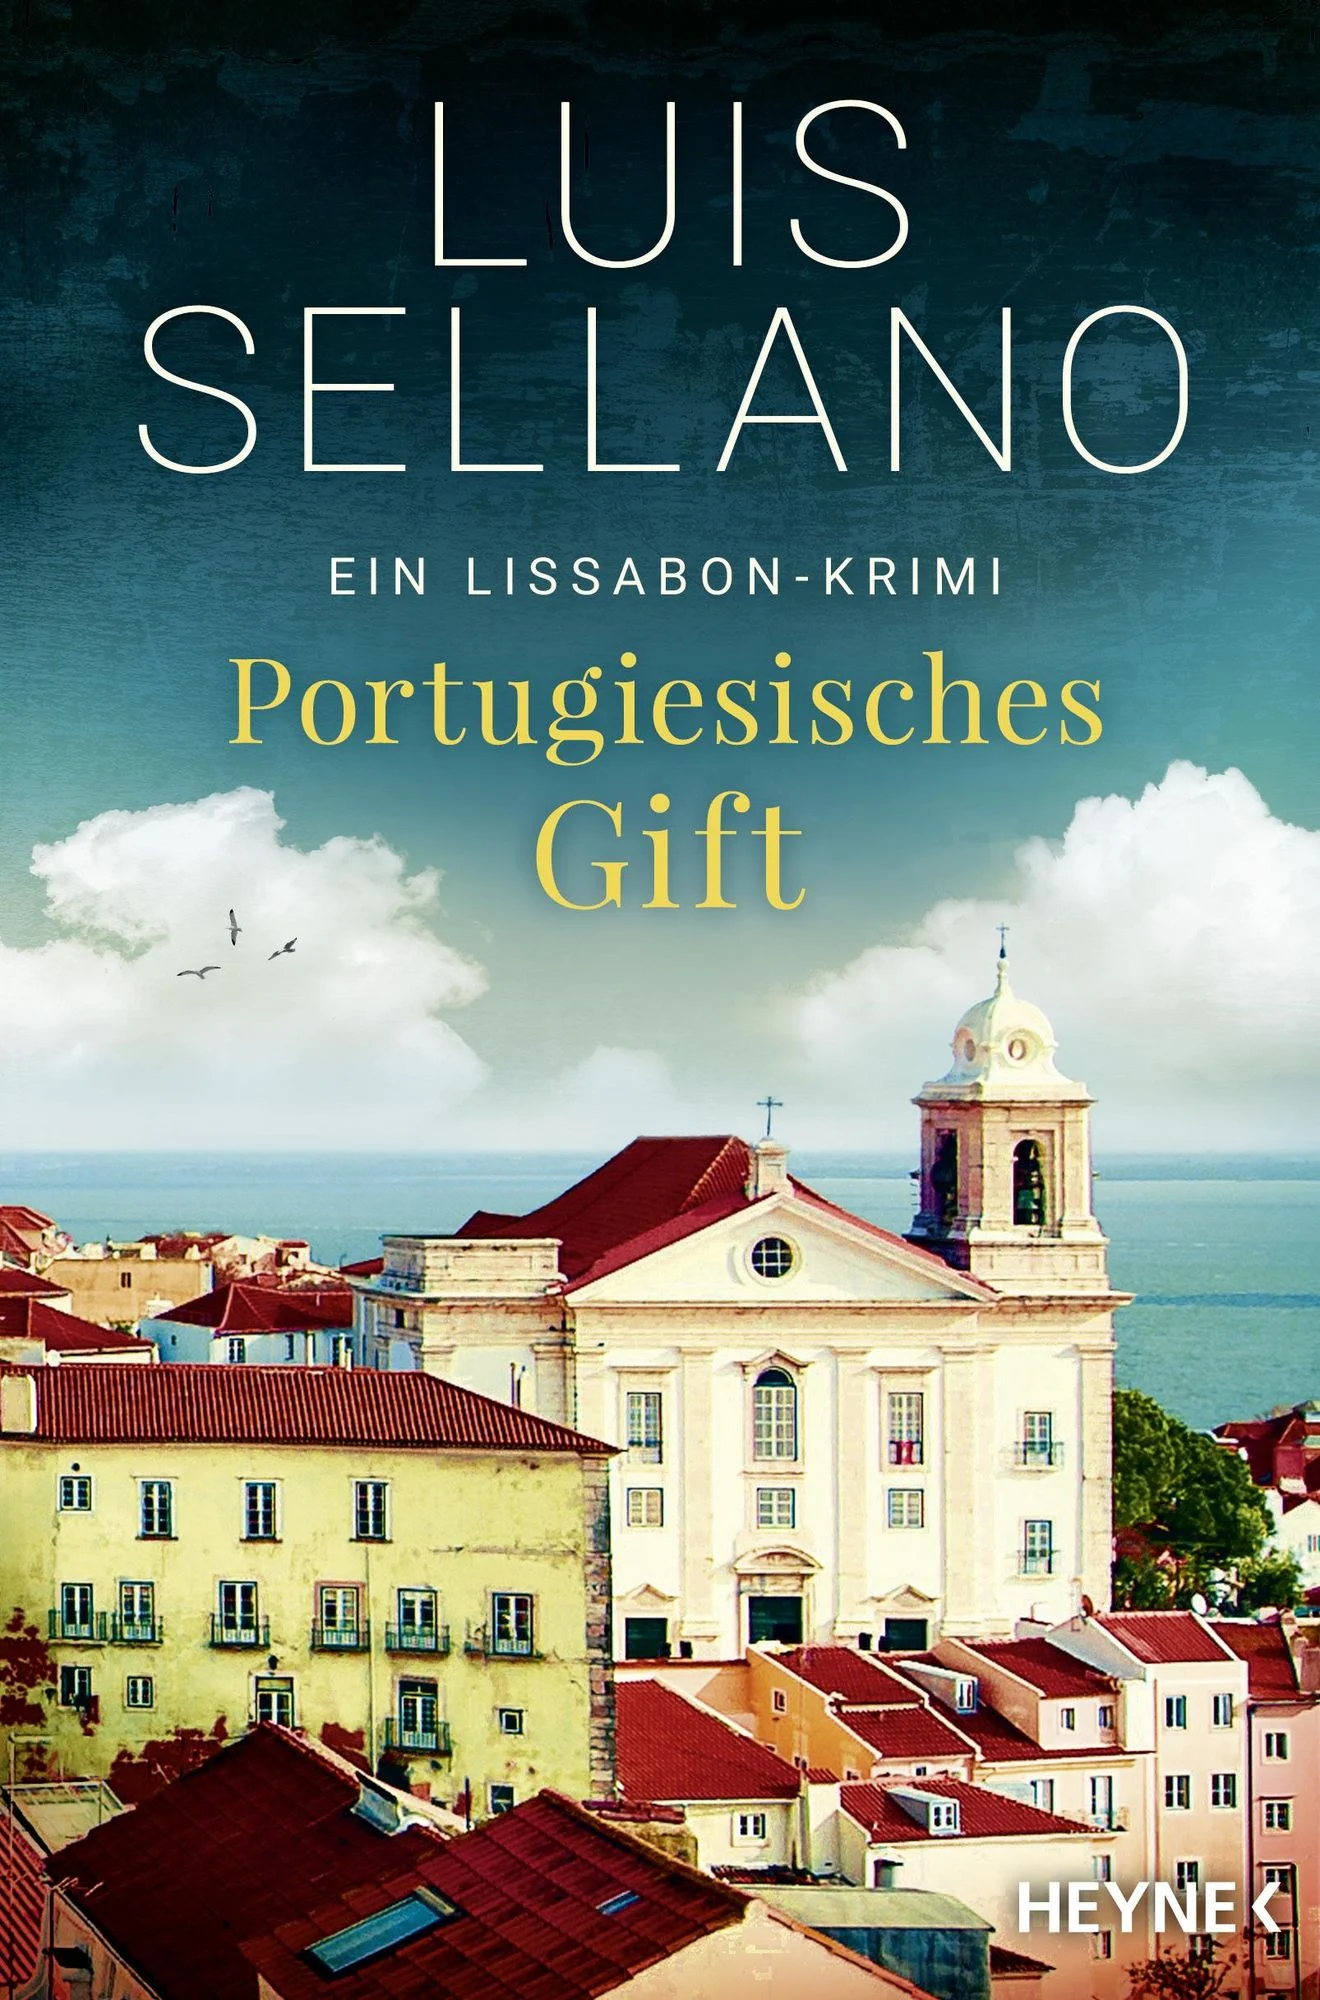 Luis Sellano: Portugiesisches Gift, ein Lissabon-Krimi